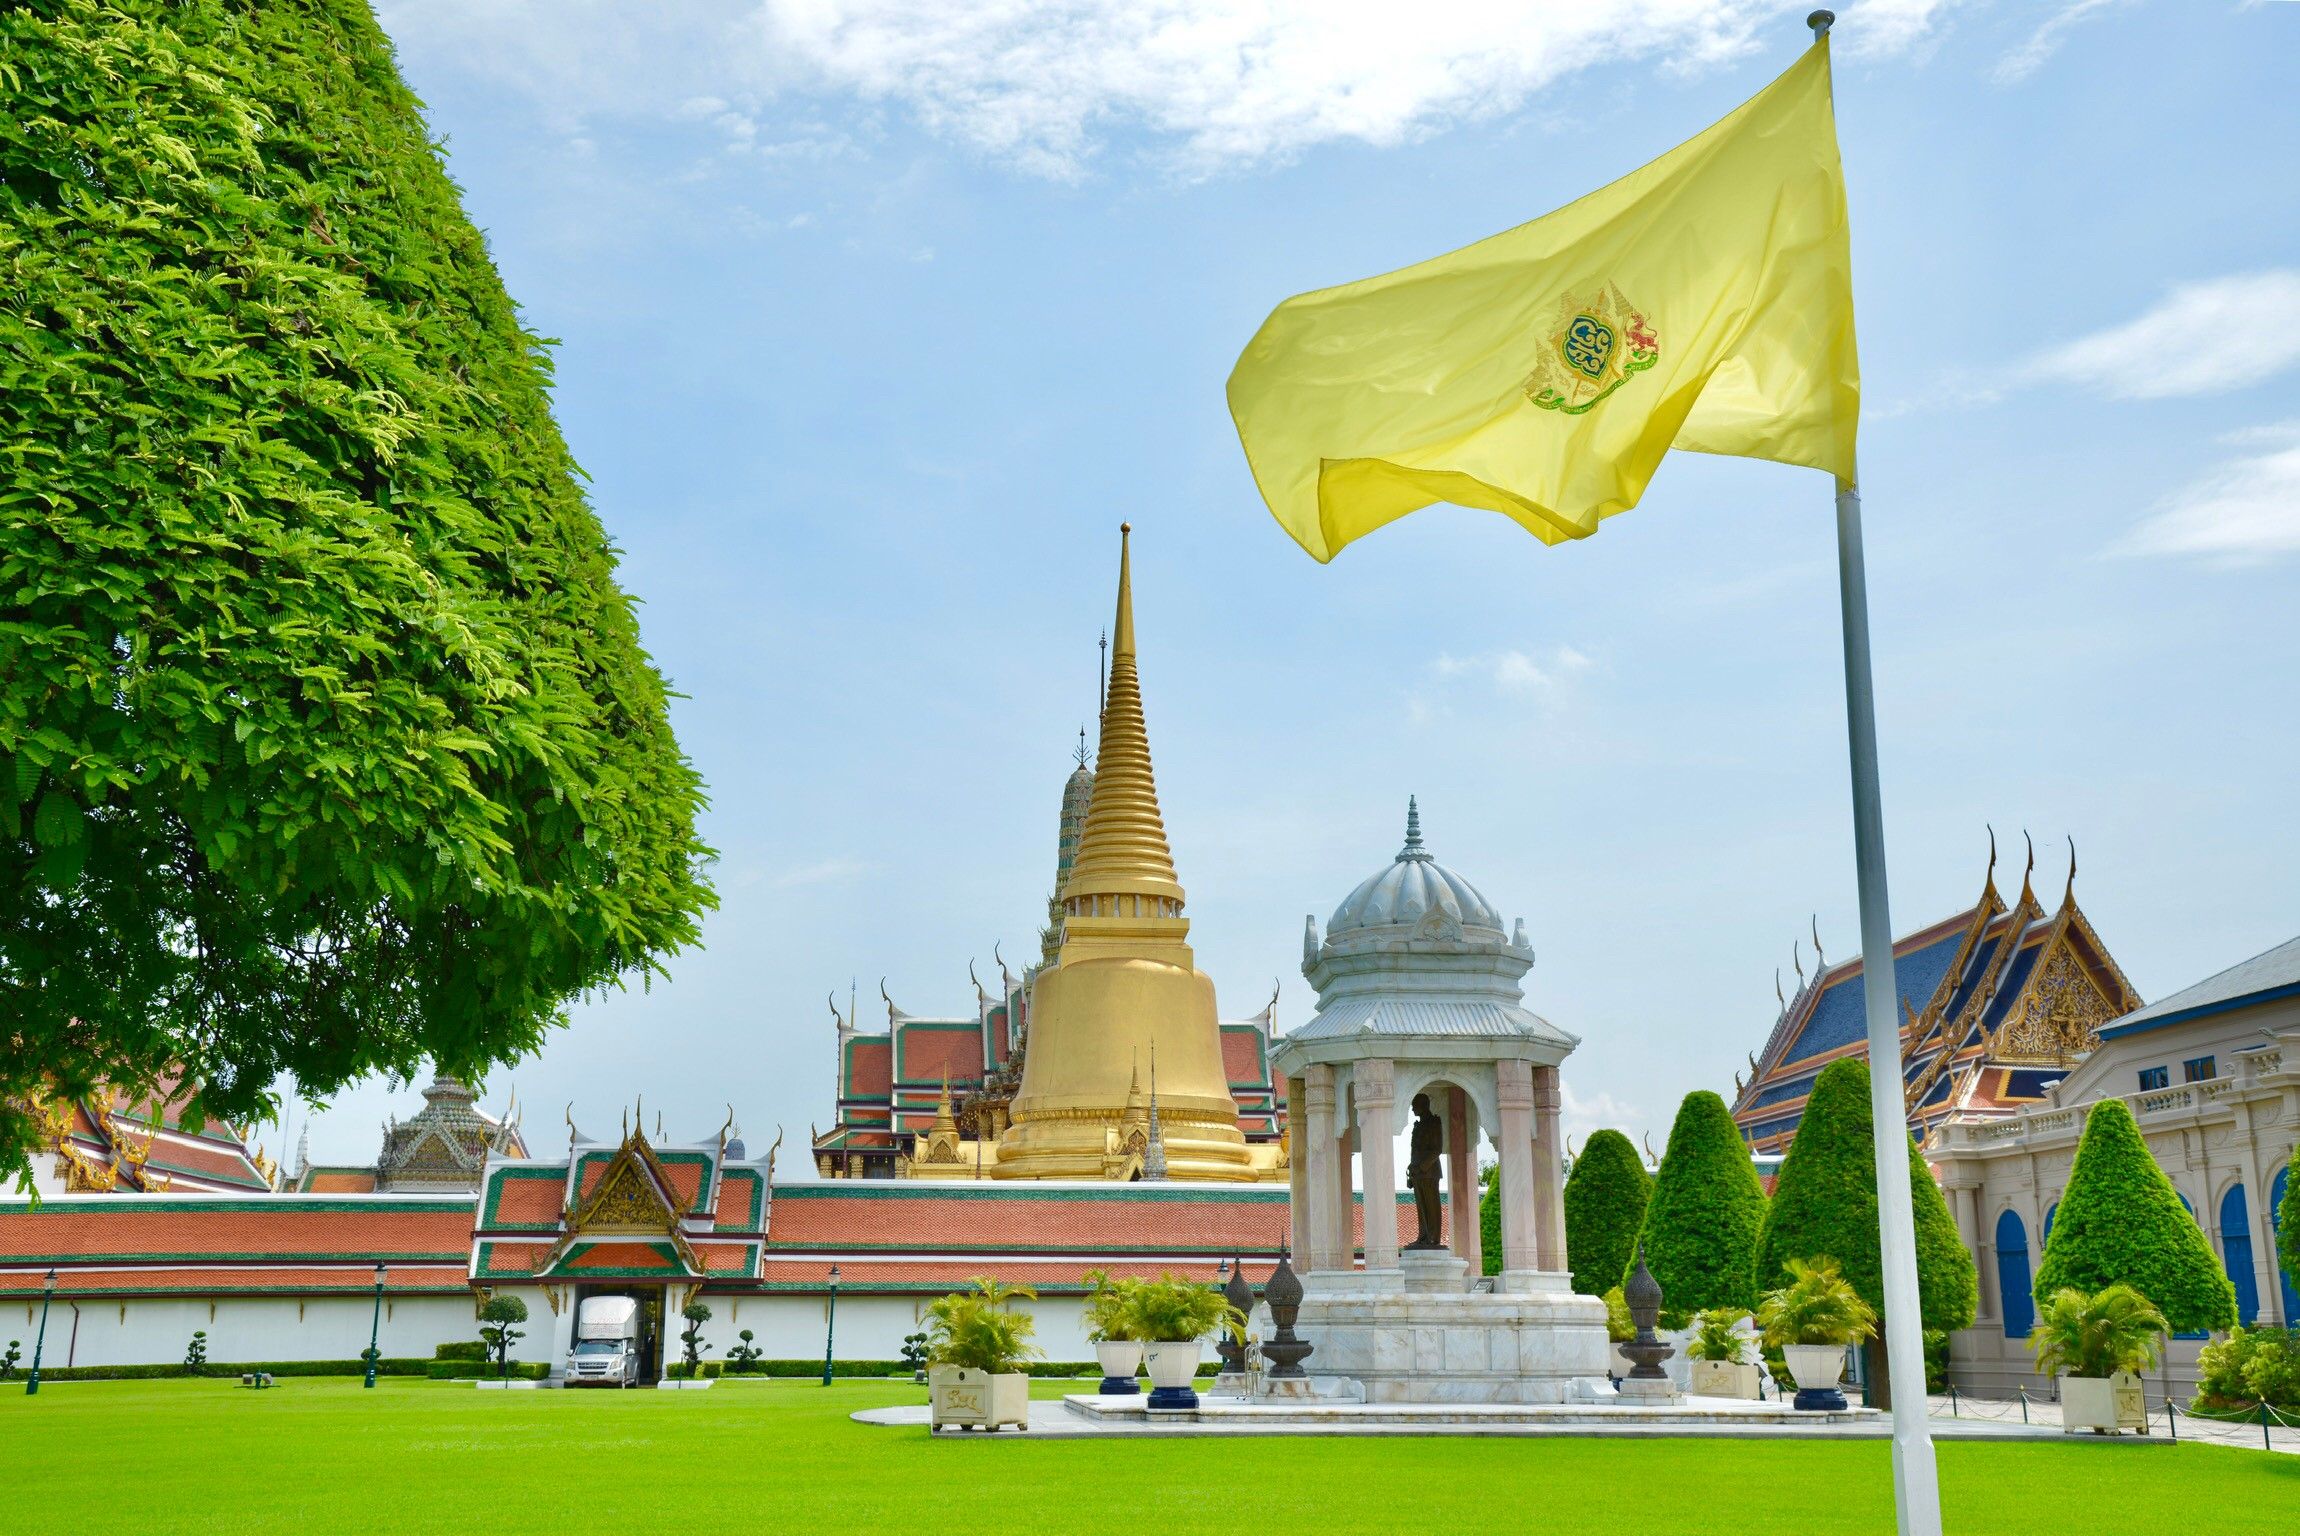 タイの観光地 旅行者に関わるコロナウイルス最新情報 ブログ詳細 ウェンディーツアー